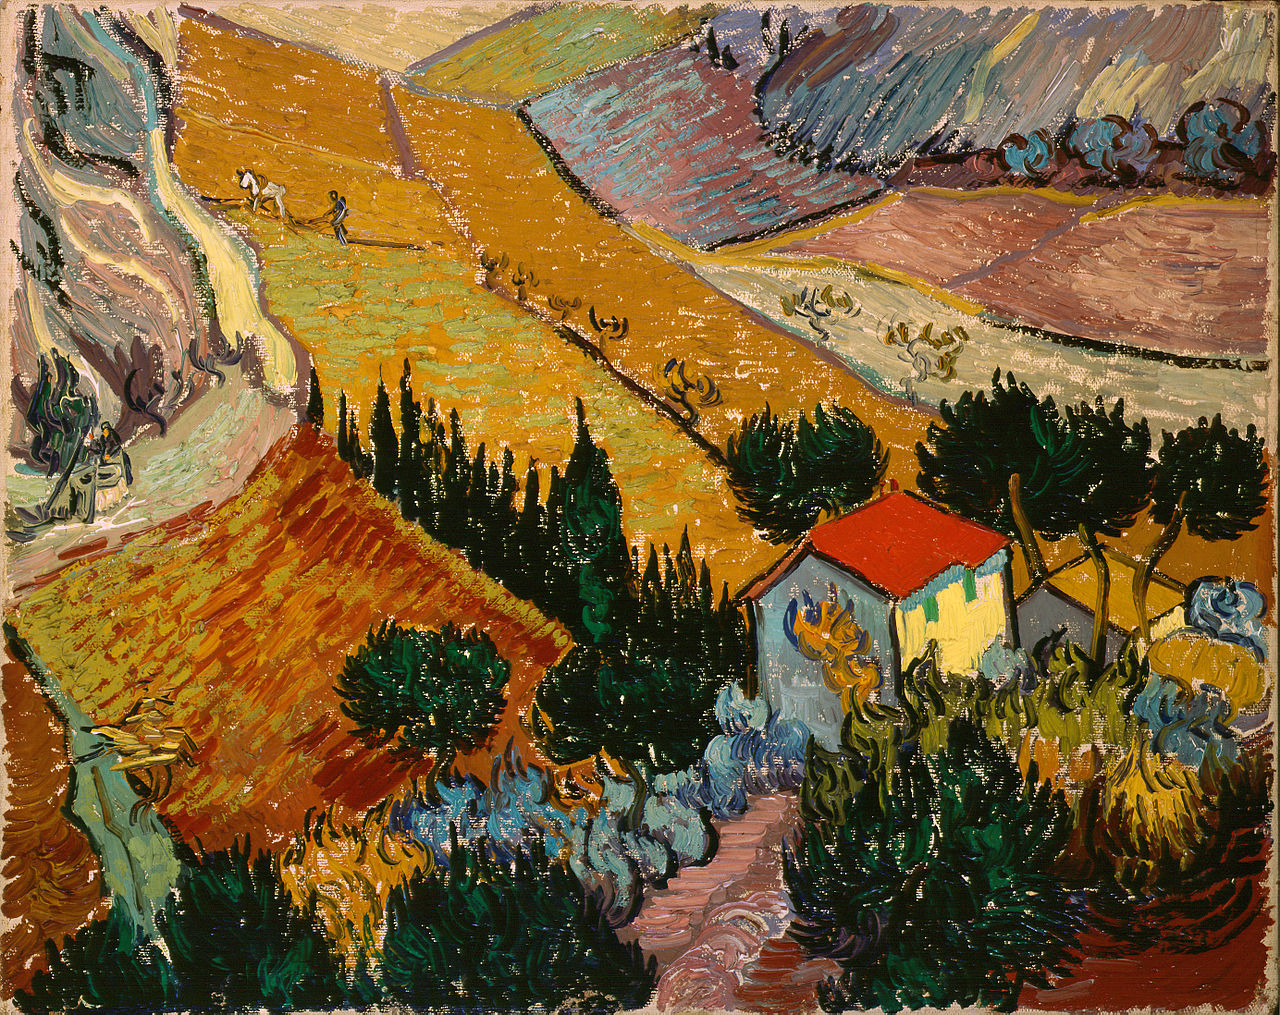 Dolina z oraczem widzianym z góry by Vincent van Gogh - 1889 - 33 x 41,4 cm 